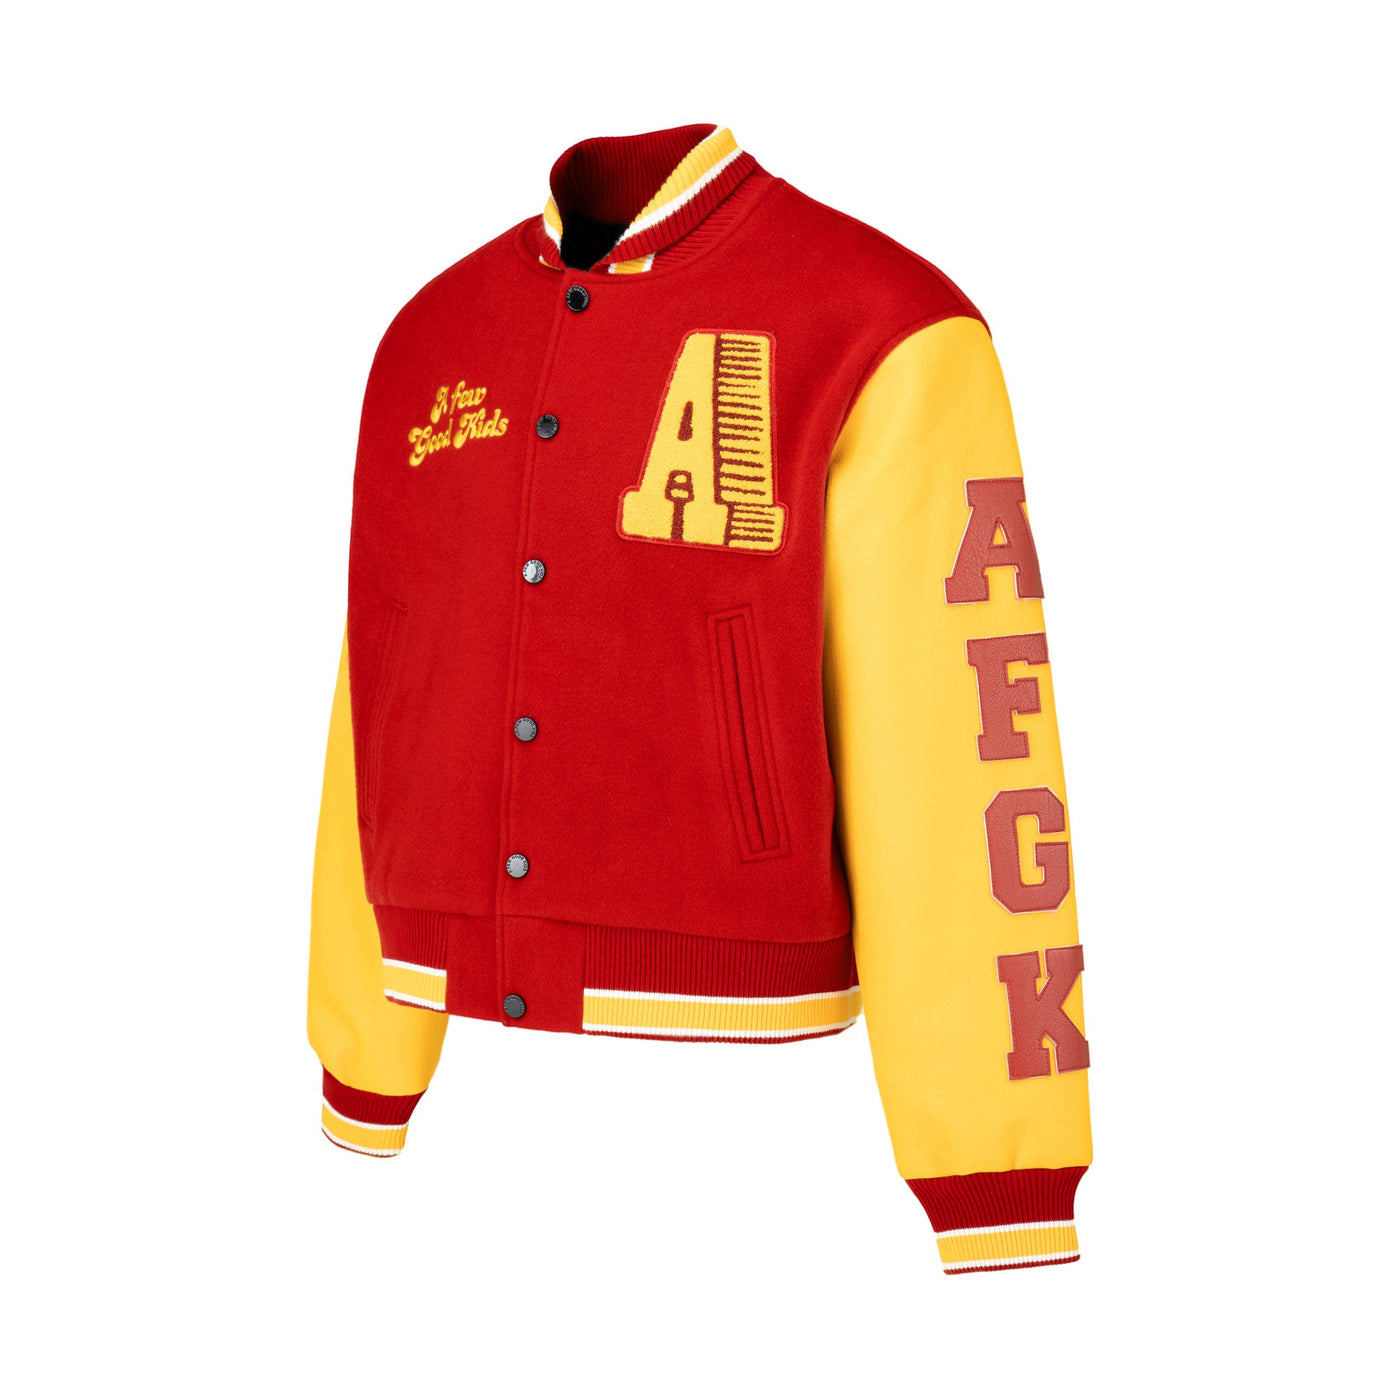 DONCARE (AFGK) "Number 99 Varsity Jacket" - RED